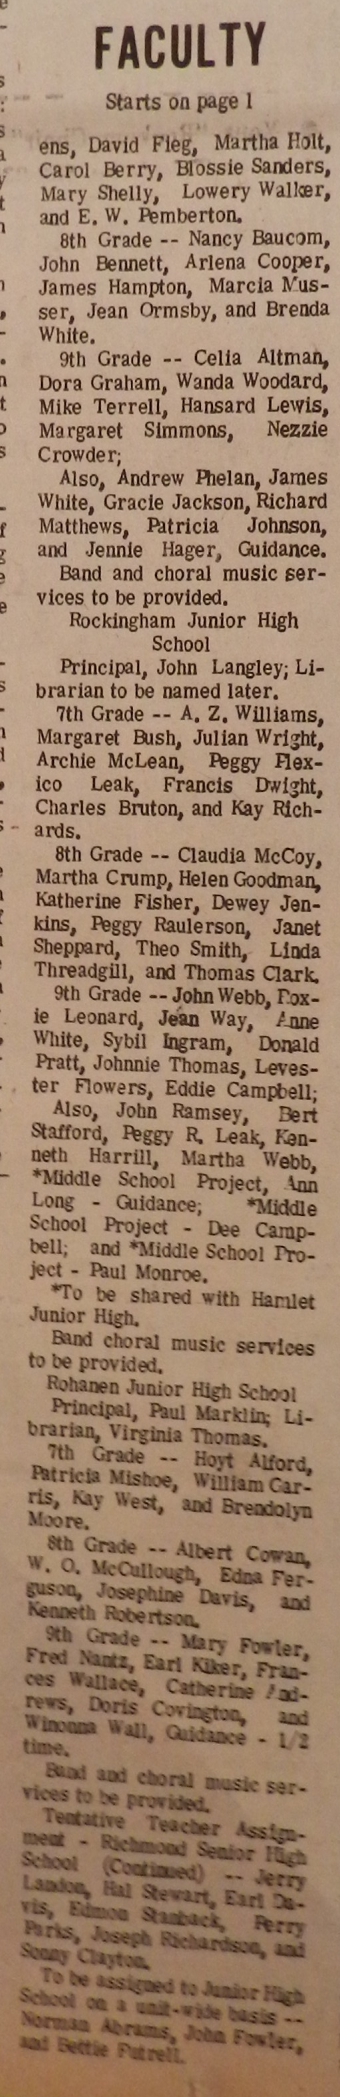 1972 RSH teachers f.jpg